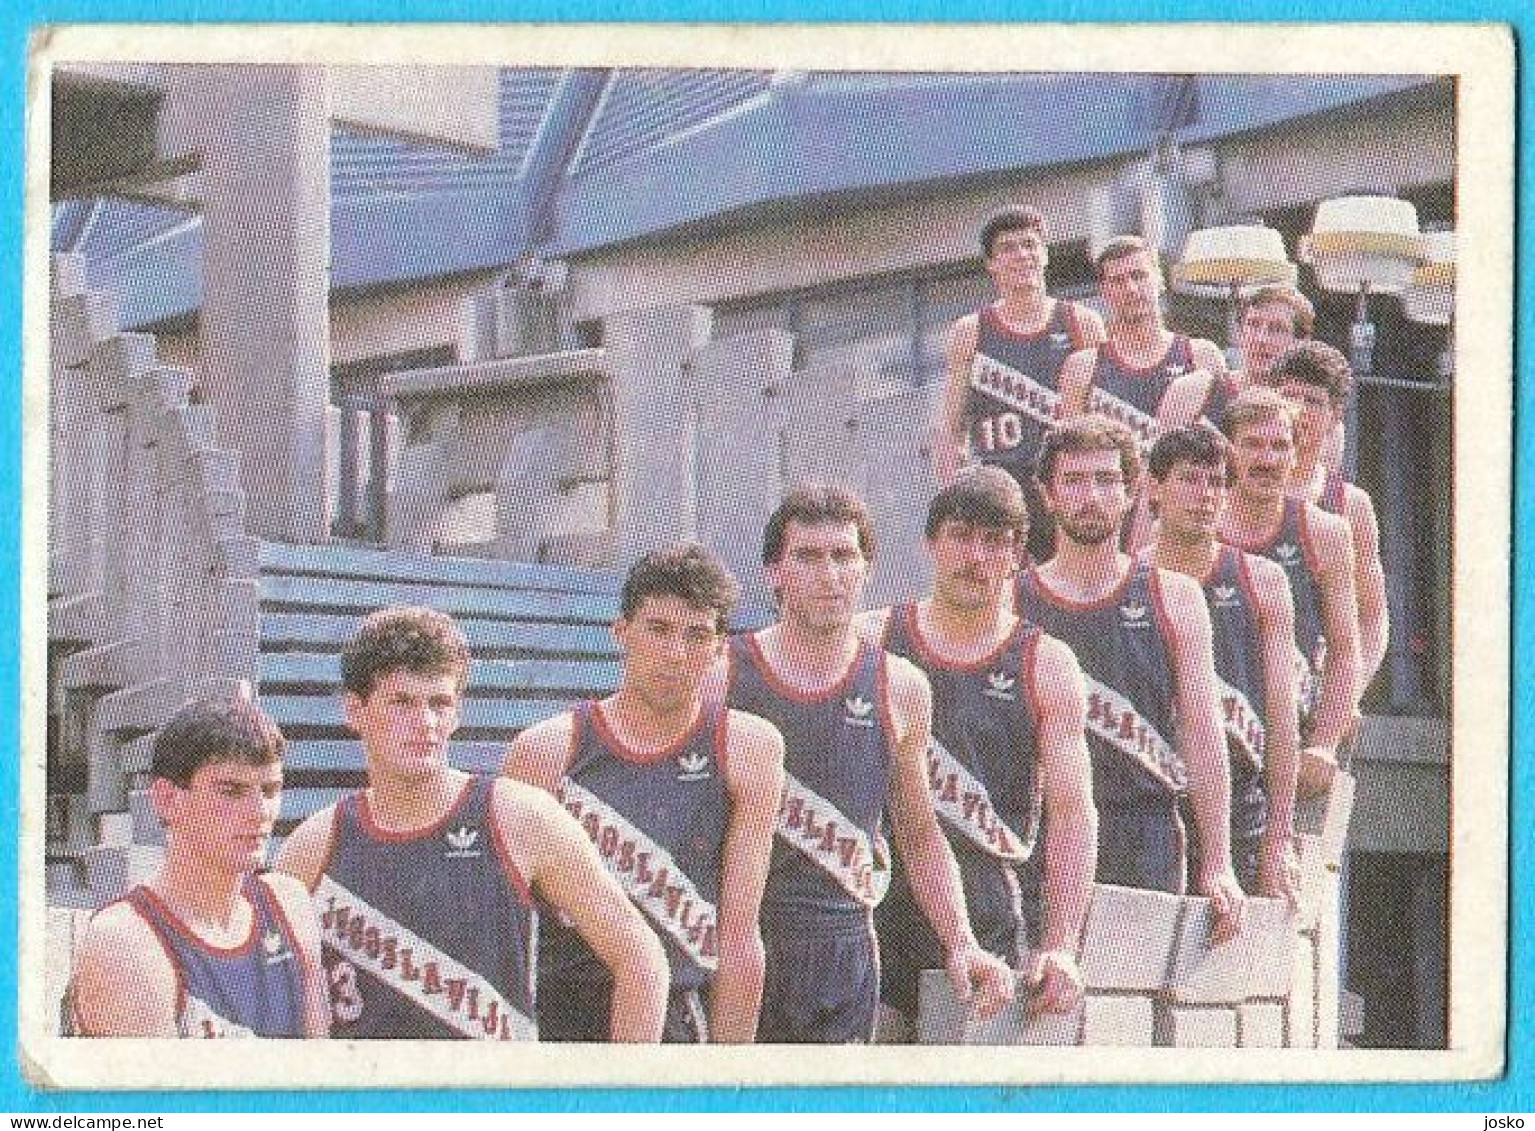 YUGOSLAV BASKETBALL TEAM - Vintage Basketball Card 1980s * Drazen Petrovic Stojko Vrankovic Drazen Dalipagic F. Arapovic - Avant-1980